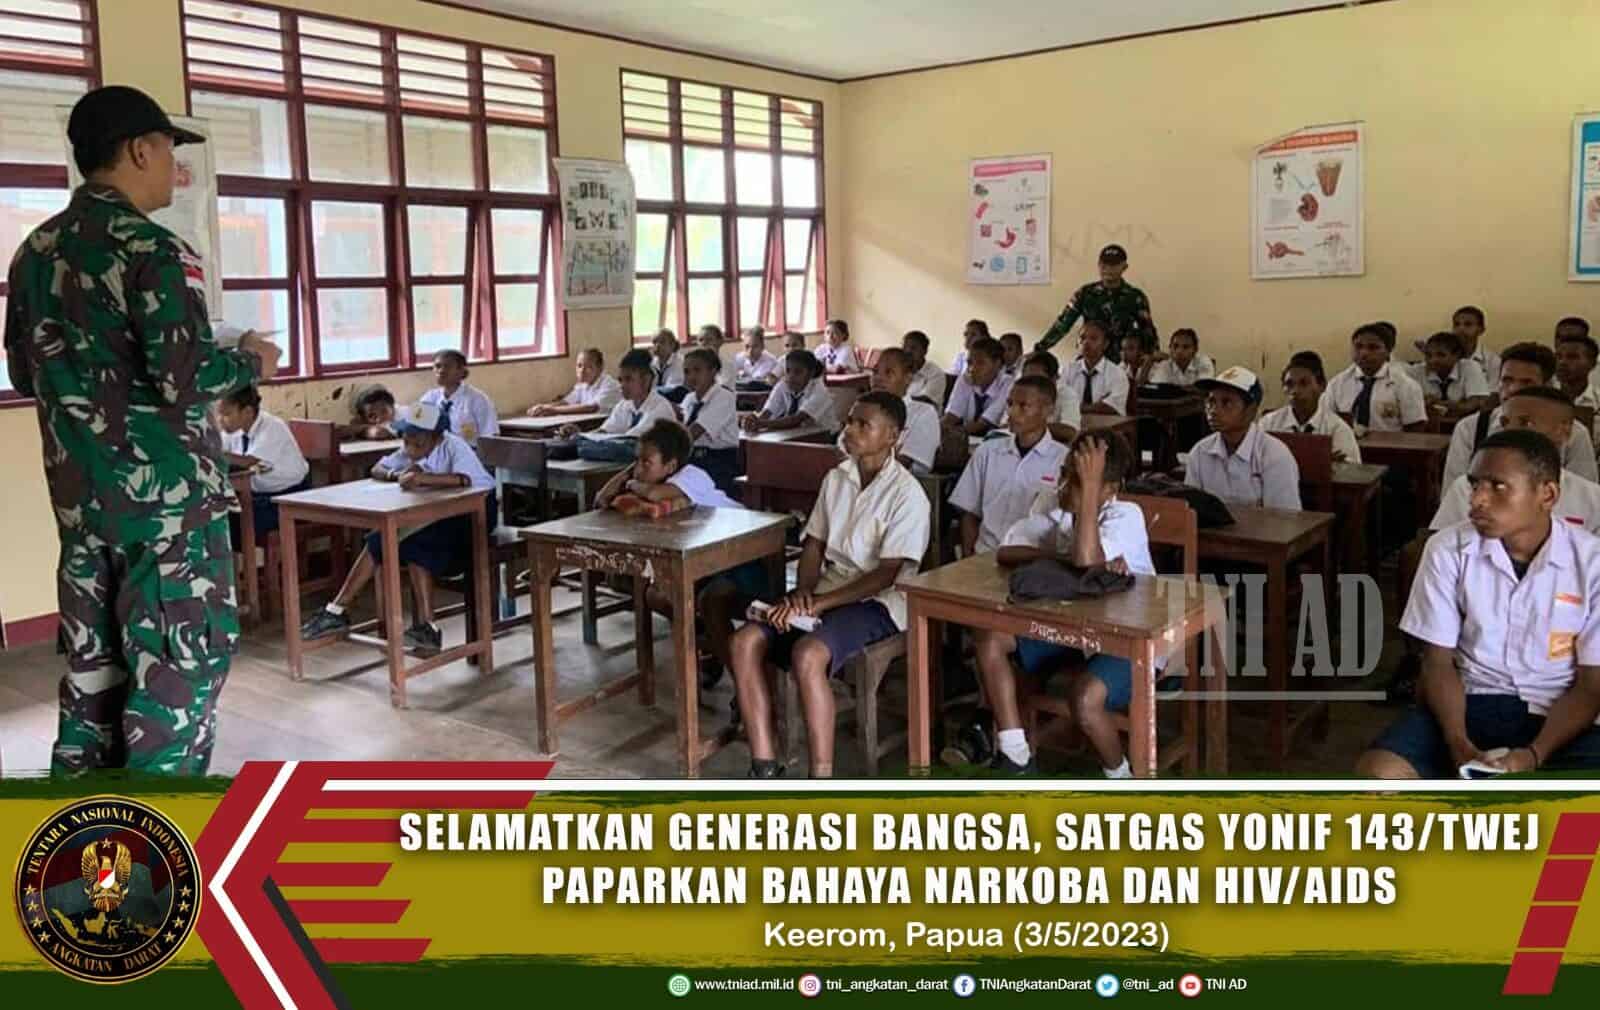 Selamatkan Generasi Bangsa, Satgas Yonif 143/TWEJ Paparkan Bahaya Narkoba dan HIV/AIDS di Pedalaman Papua